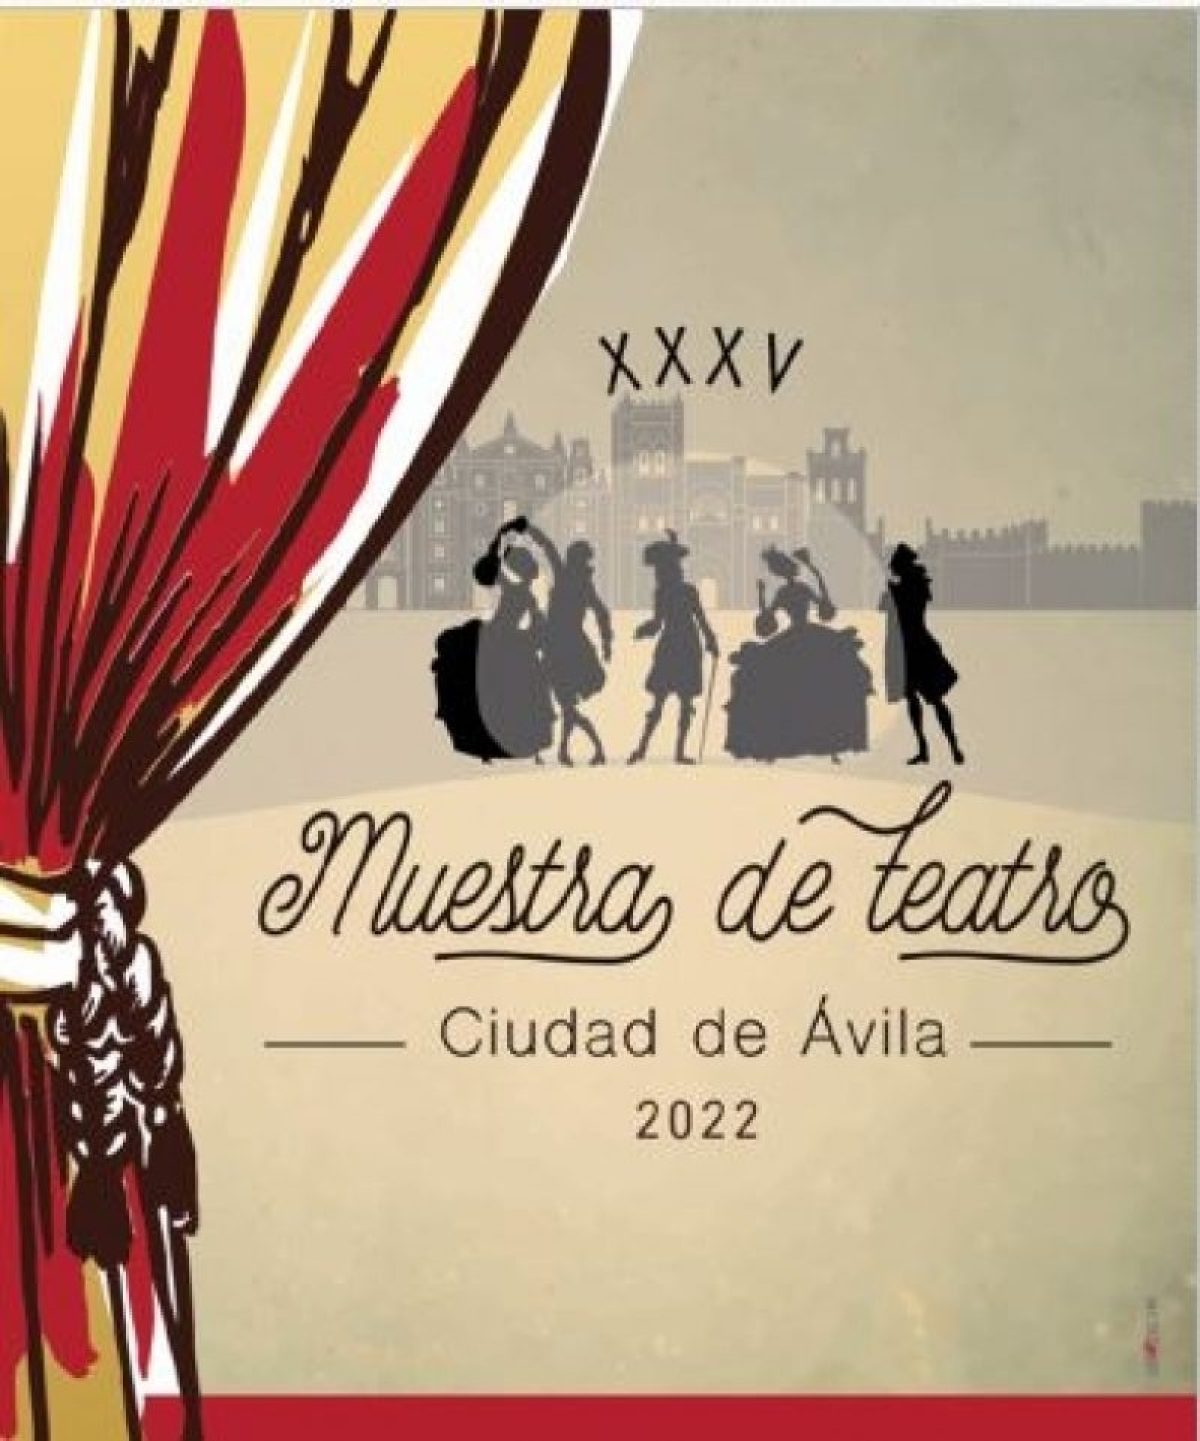 XXXV Muestra de Teatro Ciudad de Ávila (2022)